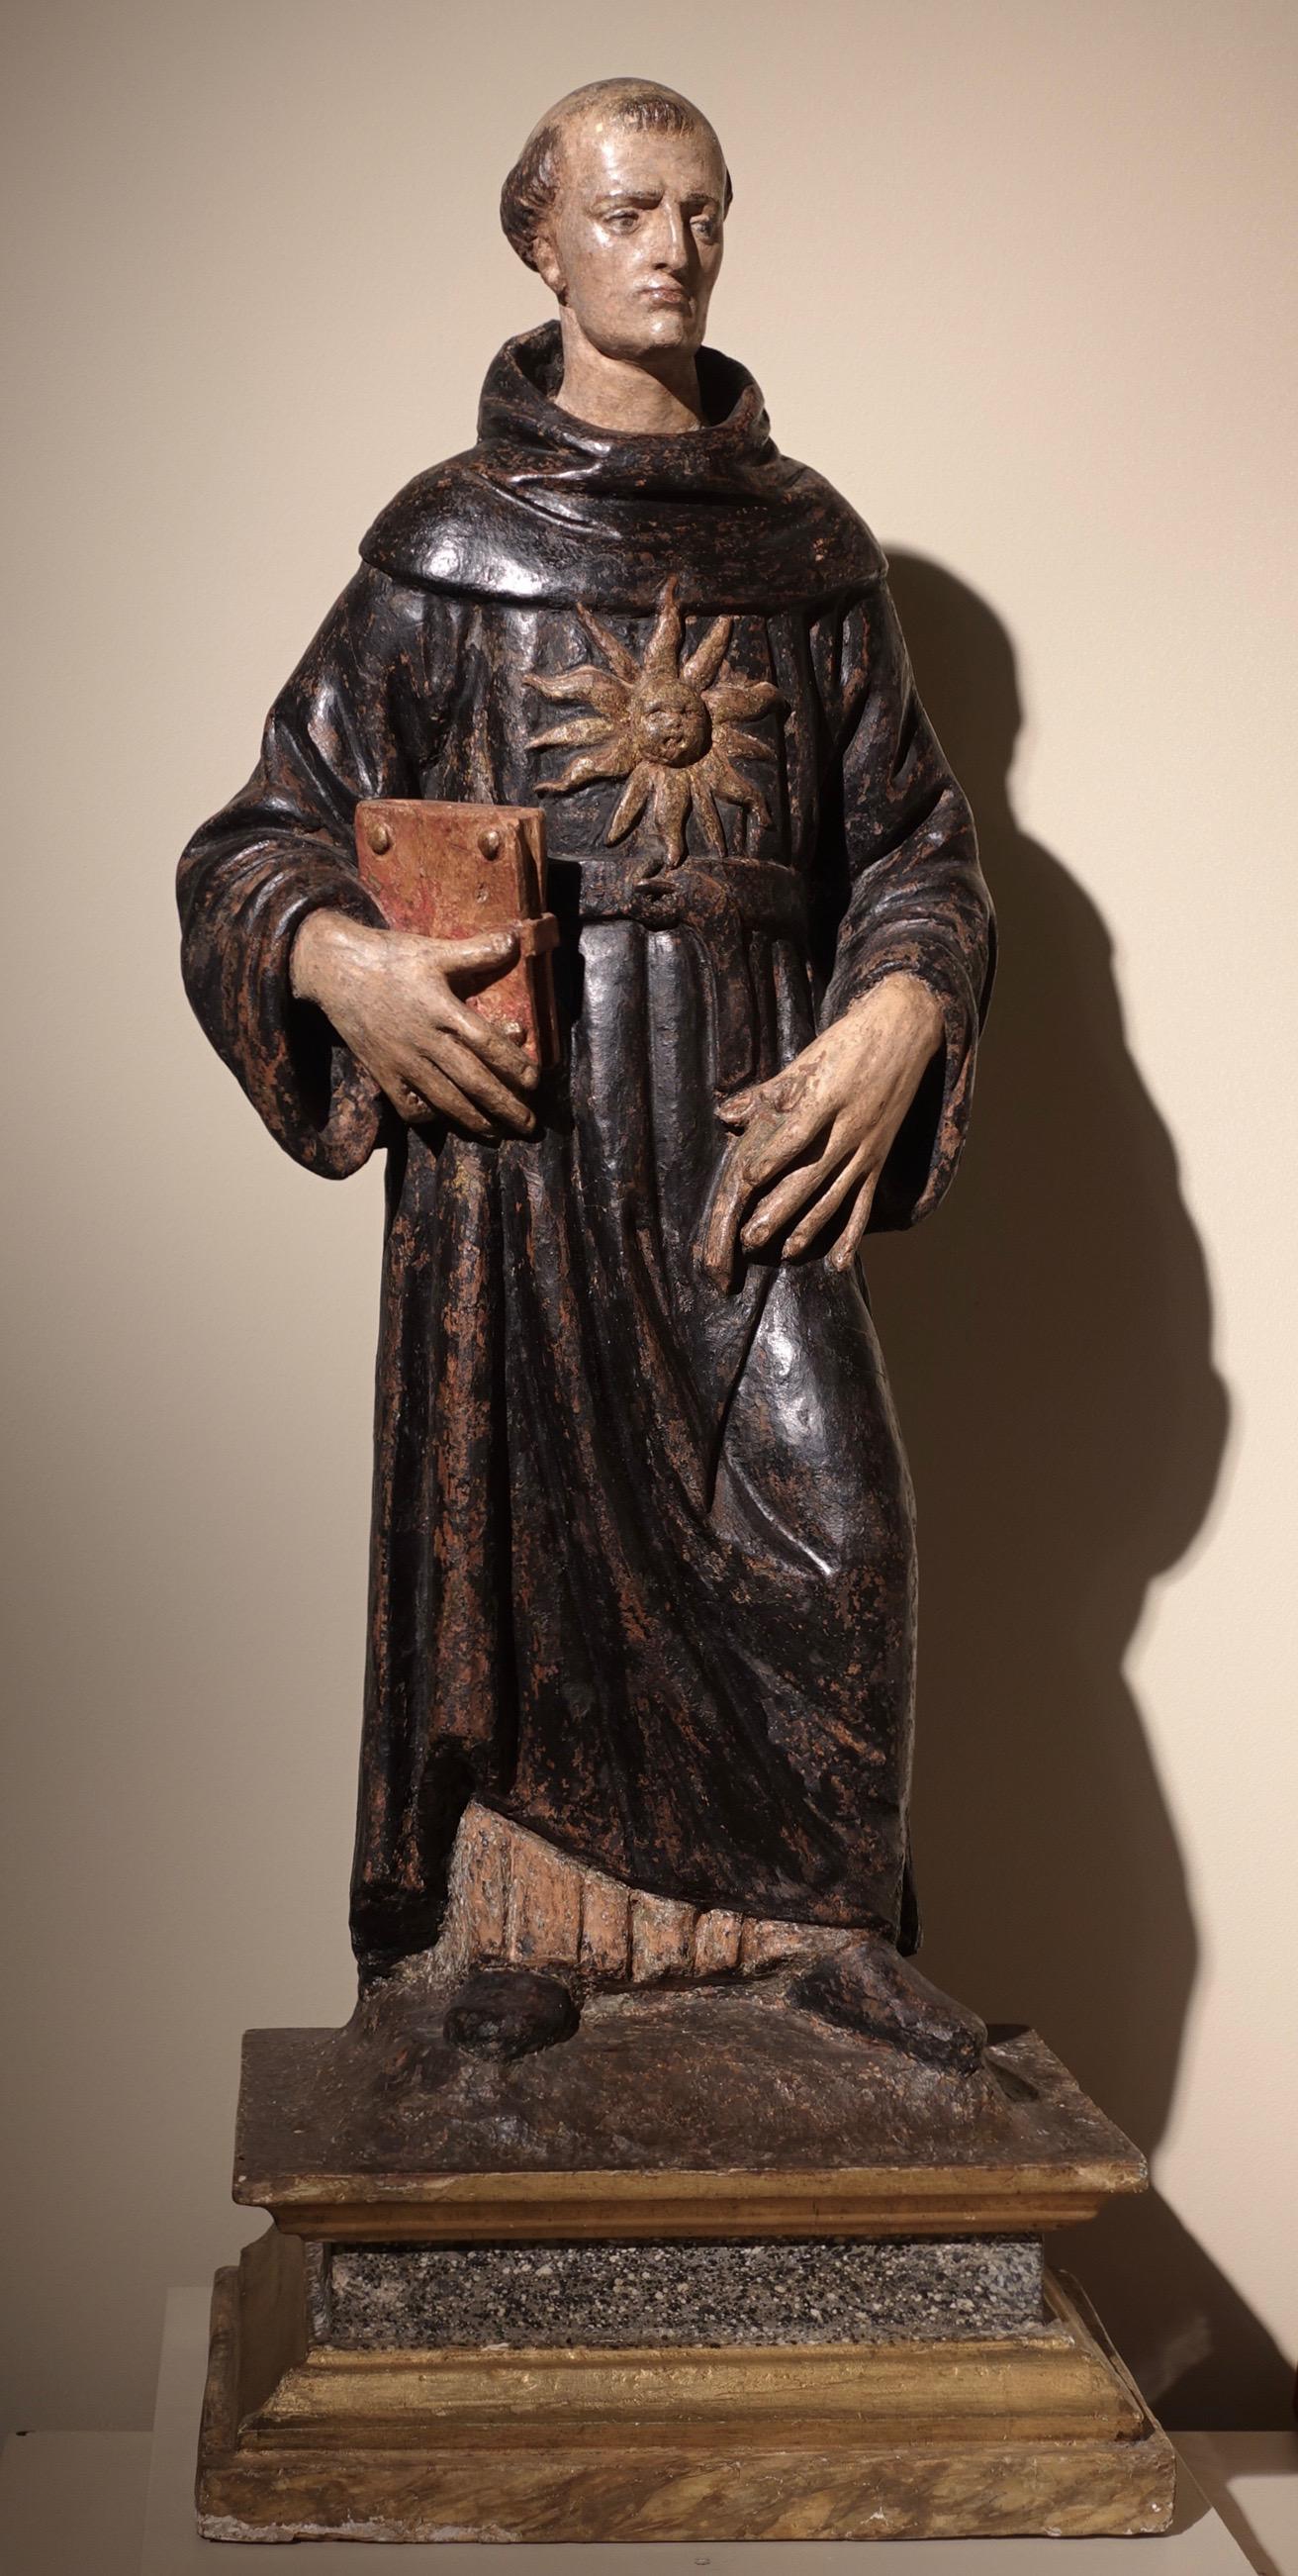 Agnolo di Polo (Florence 1470 - Arezzo 1528)
Saint Nicolas de Tolentino
Vers 1510-1520
Terre cuite peinte et dorée
55,5 x 24 x 16,5 cm

Saint Nicolas de Tolentino est représenté avec la tunique noire ornée d'un soleil typique des ermites de Saint